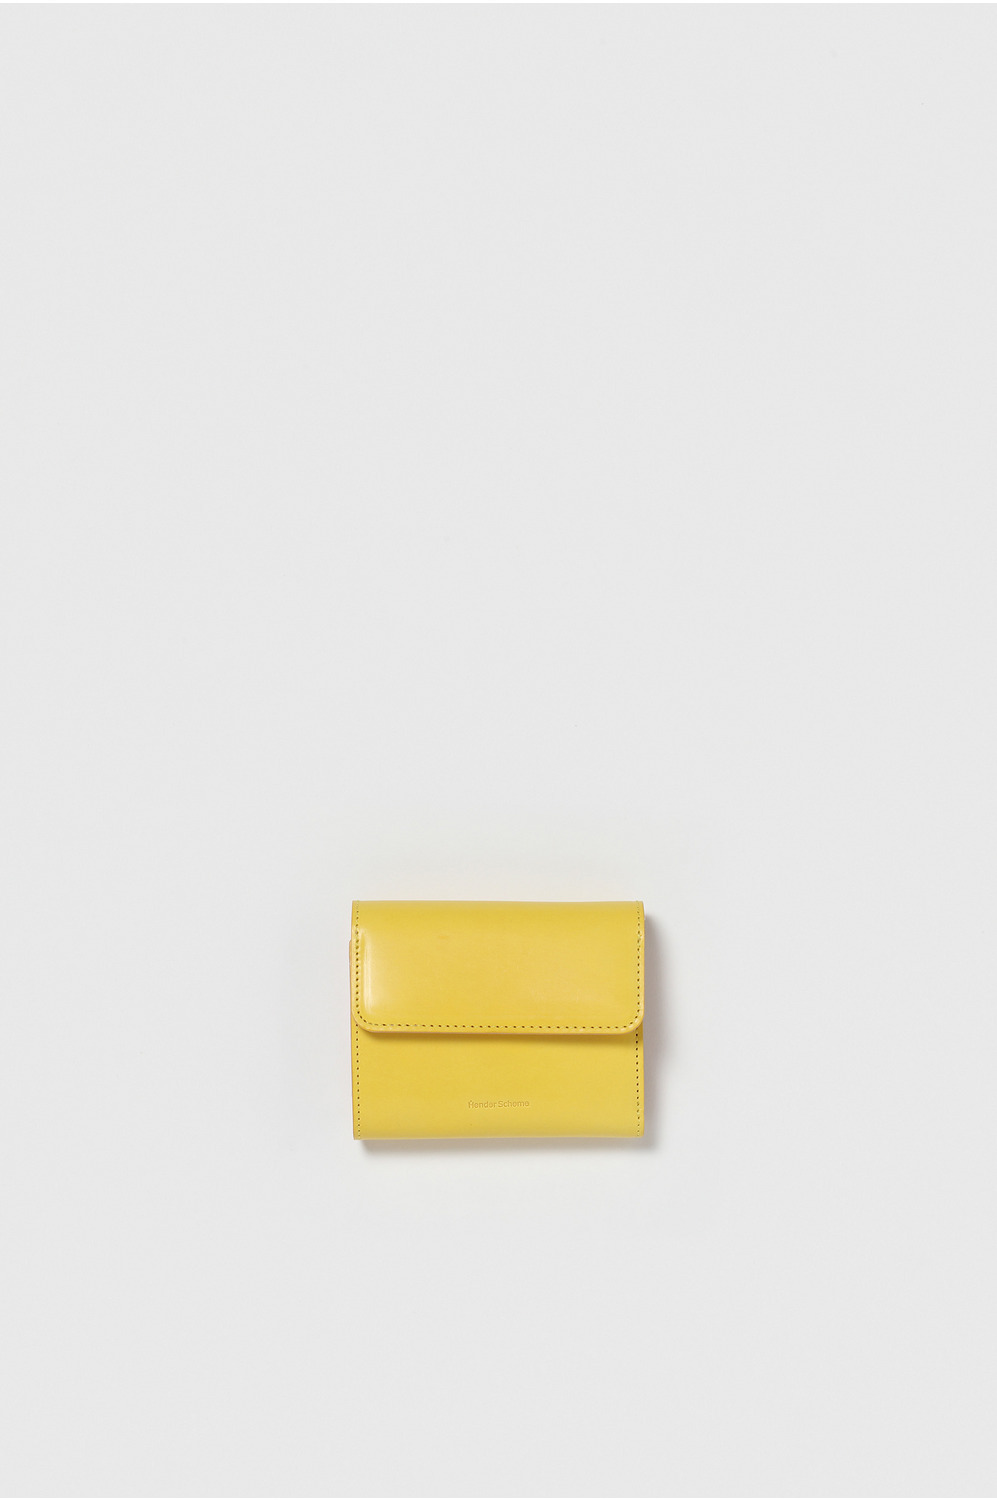 bellows wallet 詳細画像 yellow 1